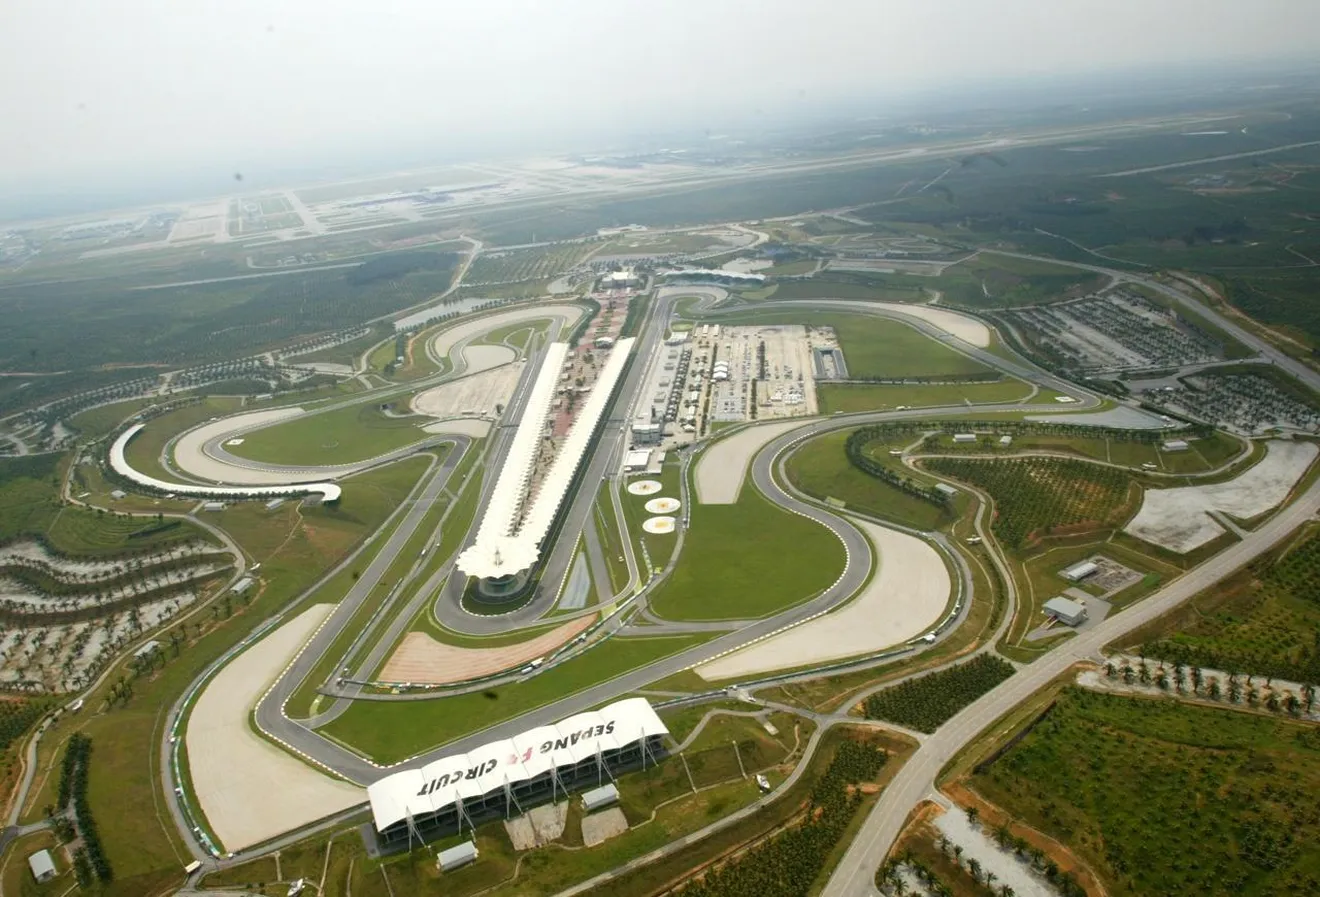 Horarios del GP de Malasia 2015 y datos del circuito de Sepang